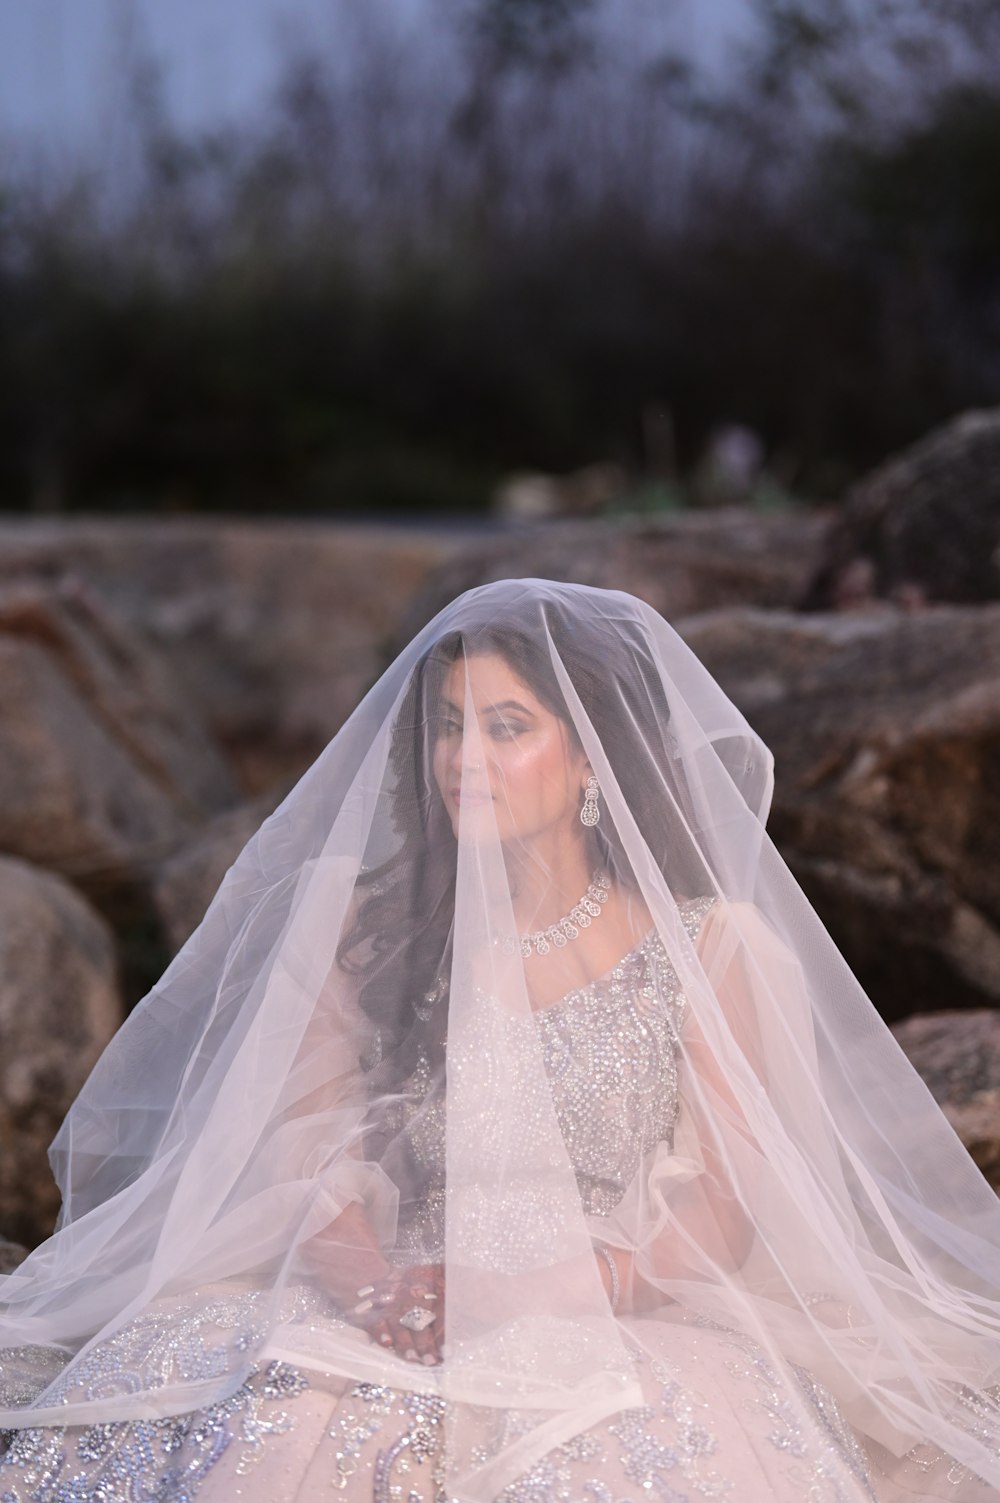 a woman in a wedding dress sitting on rocks